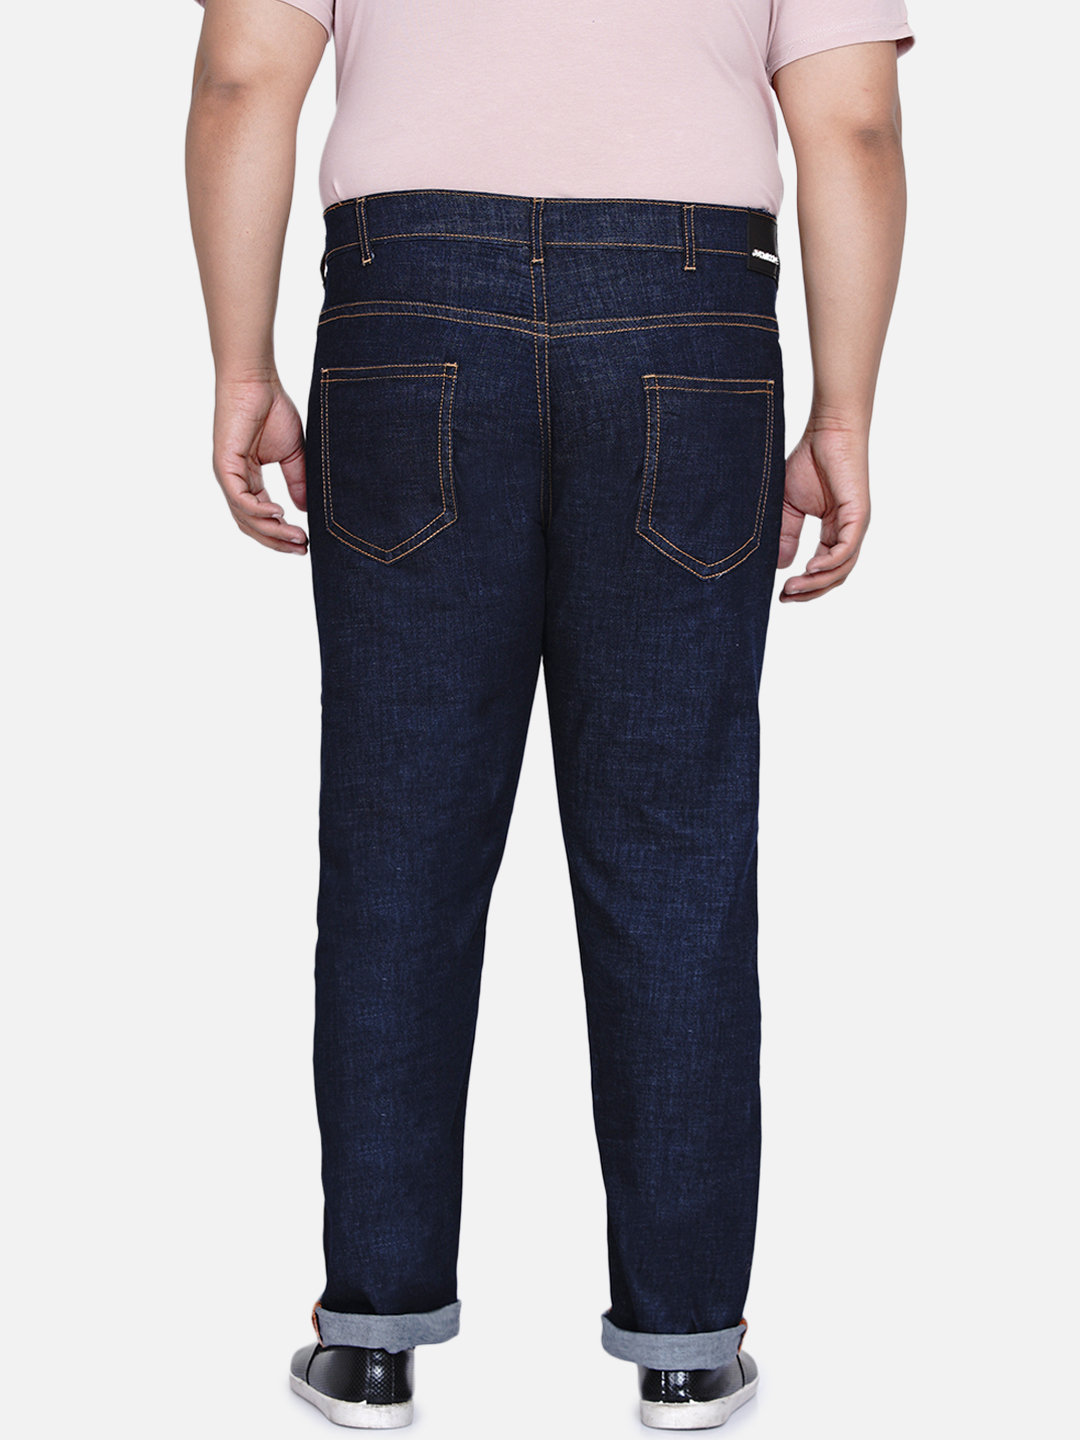 bottomwear/jeans/JPJ6035/jpj6035-5.jpg